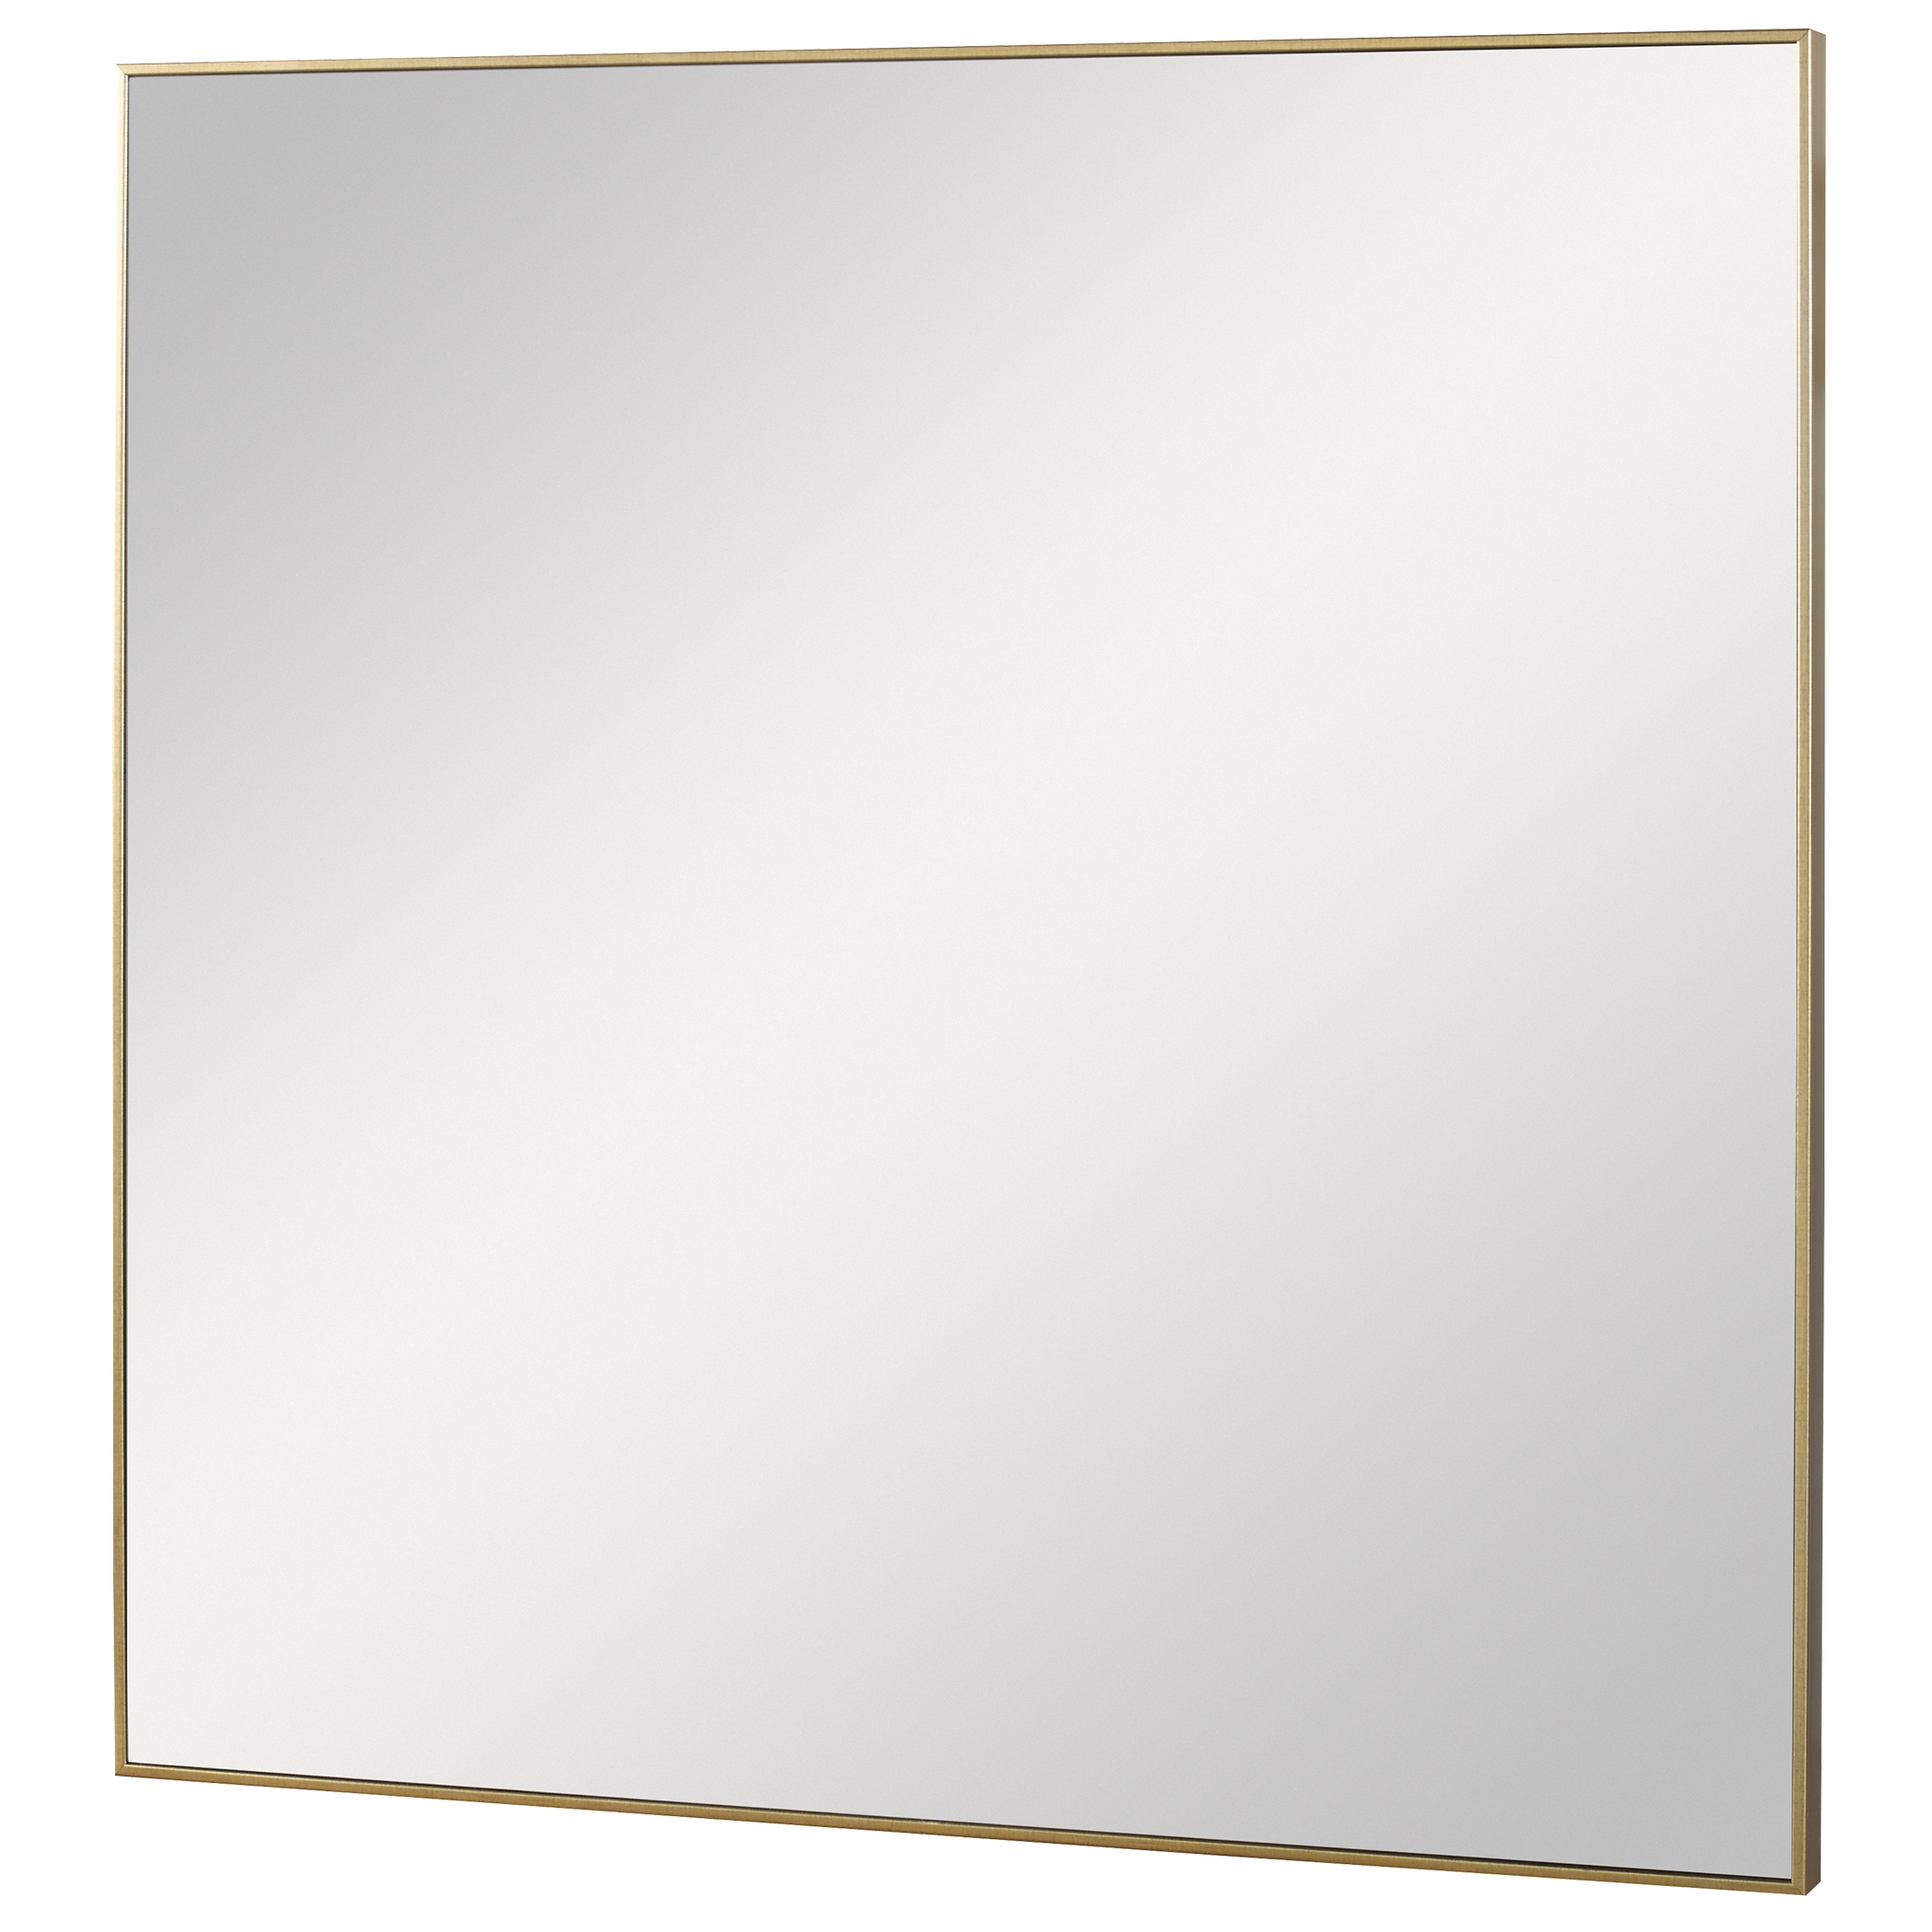 Alexo Gold Square Mirror - Image 1